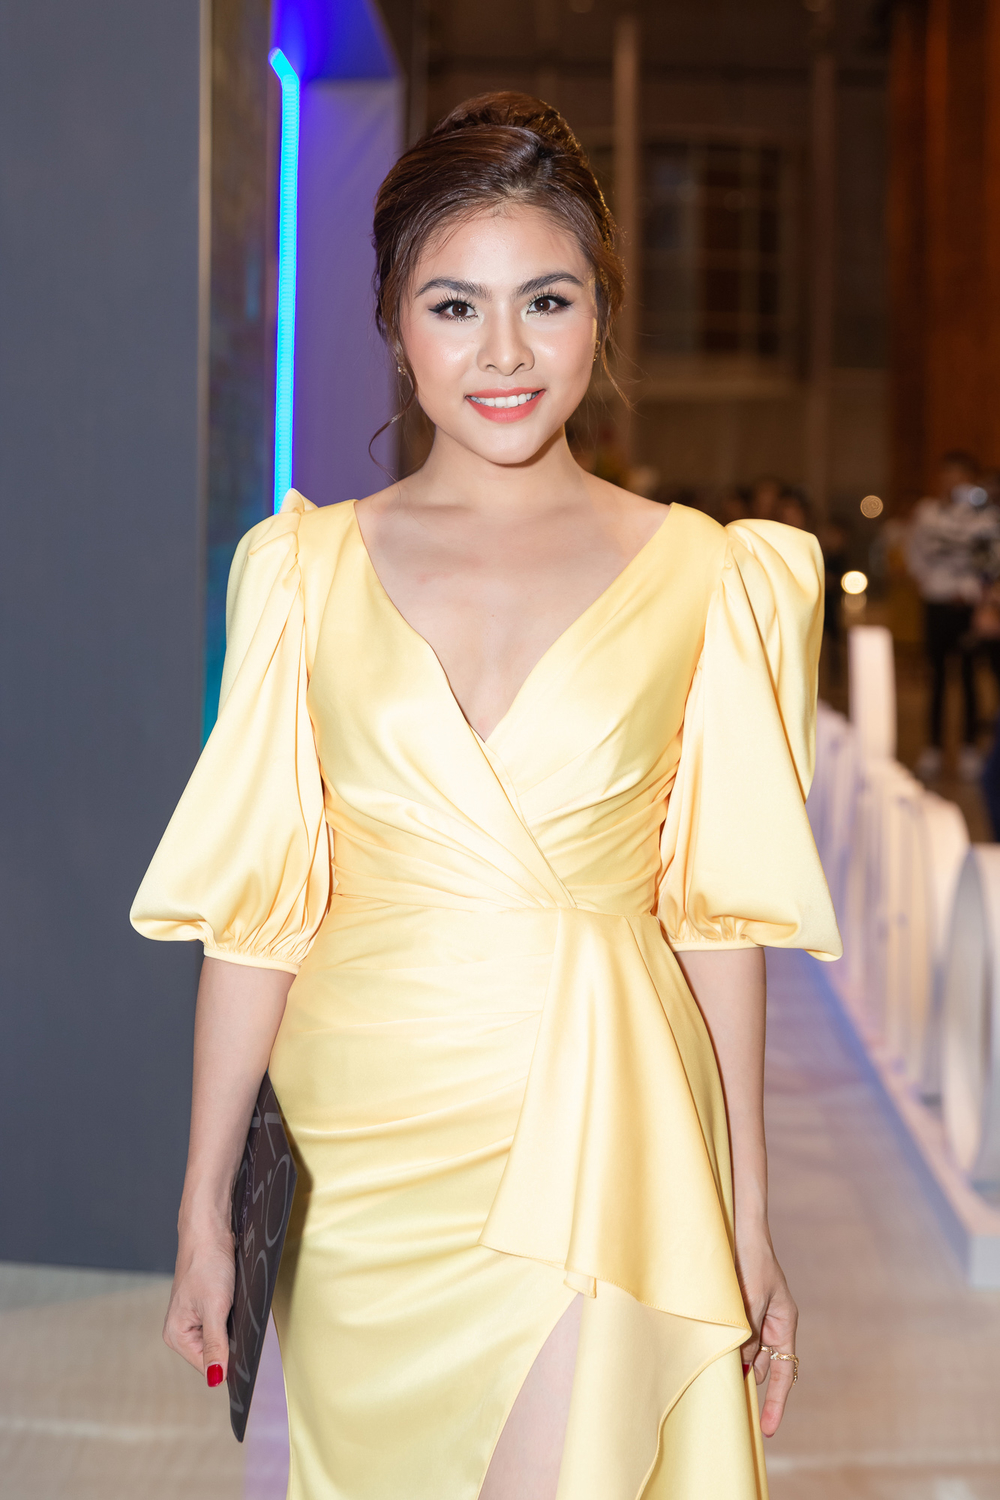  
Vân Trang nổi bật với bộ váy vàng.